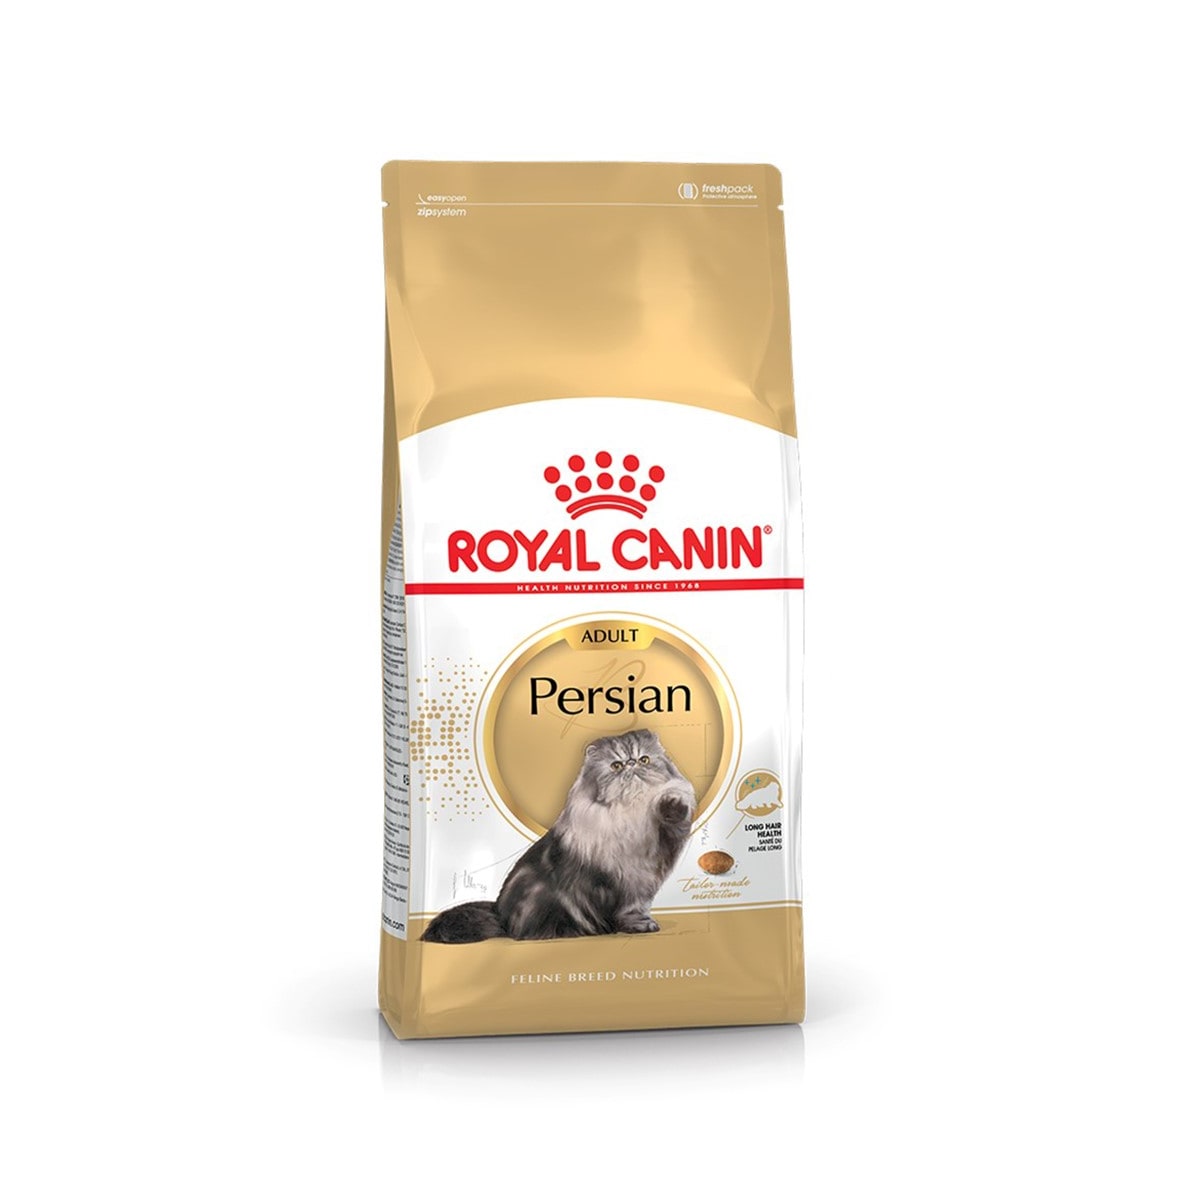 Royal Canin โรยัล คานิน อาหารแมวแบบเม็ด สำหรับแมวโตสายพันธุ์เปอร์เซีย